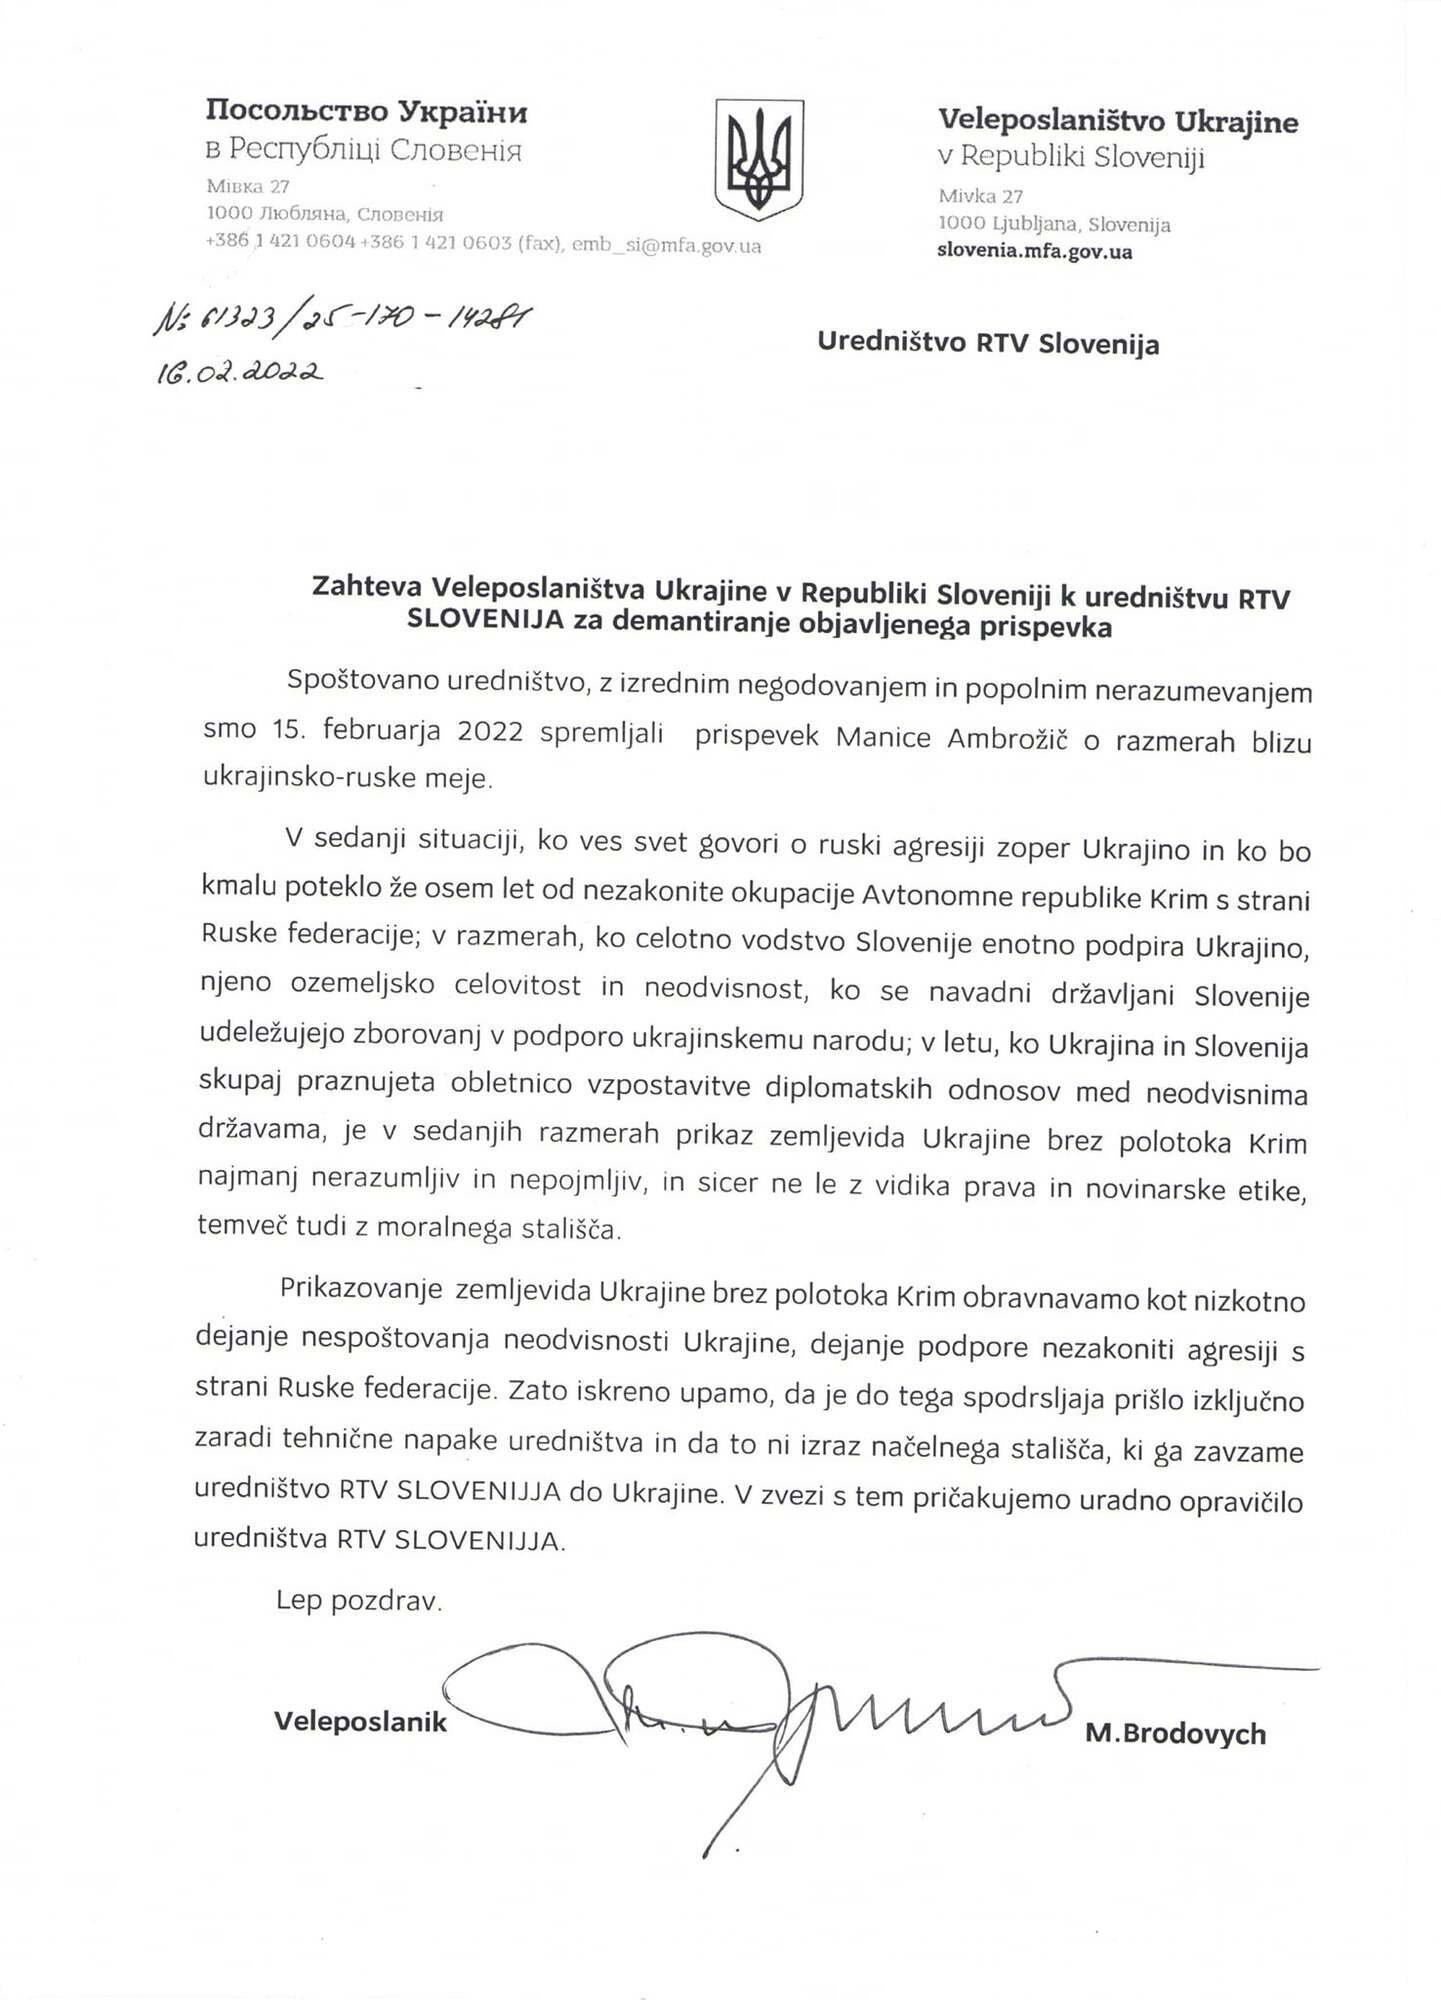 Посольство Украины в Словении потребовало извинений из-за сложившейся ситуации